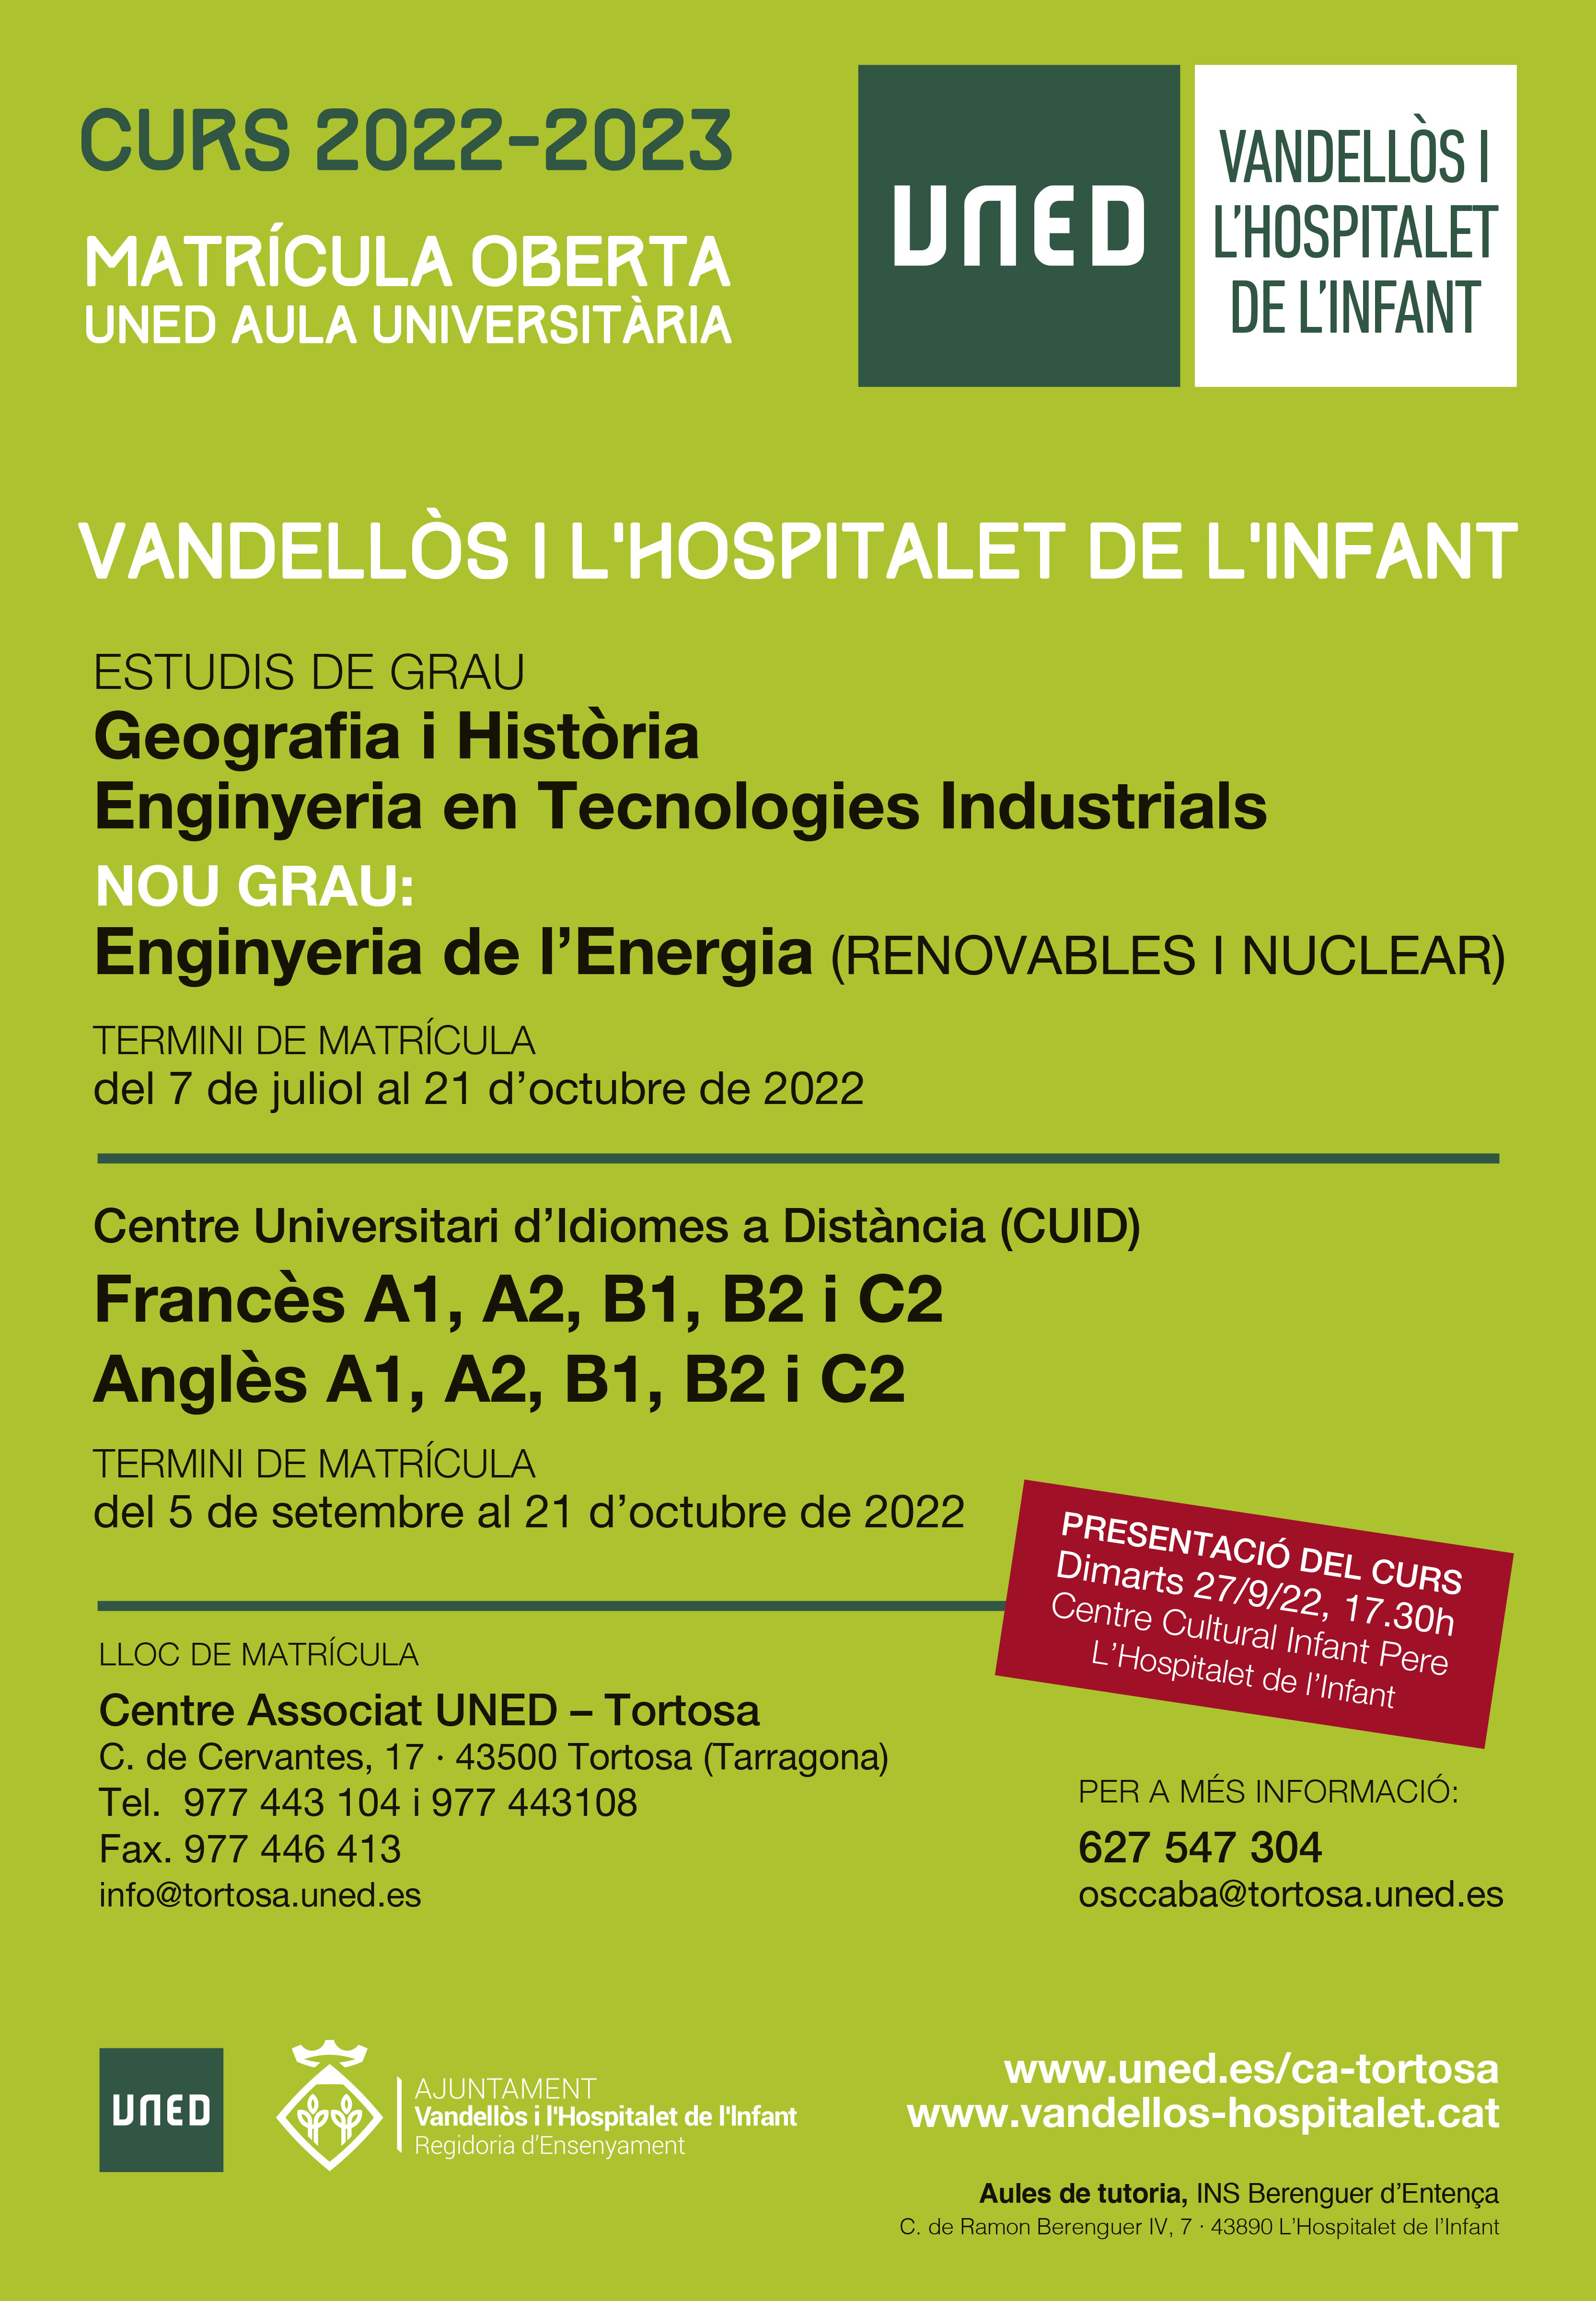 Presentació del curs 2022-2023 de la UNED i de l’Aula Sènior a Vandellòs i l’Hospitalet de l’Infant  / 27-09-2022, a les 17.30 h, a l'Hospitalet de l'Infant